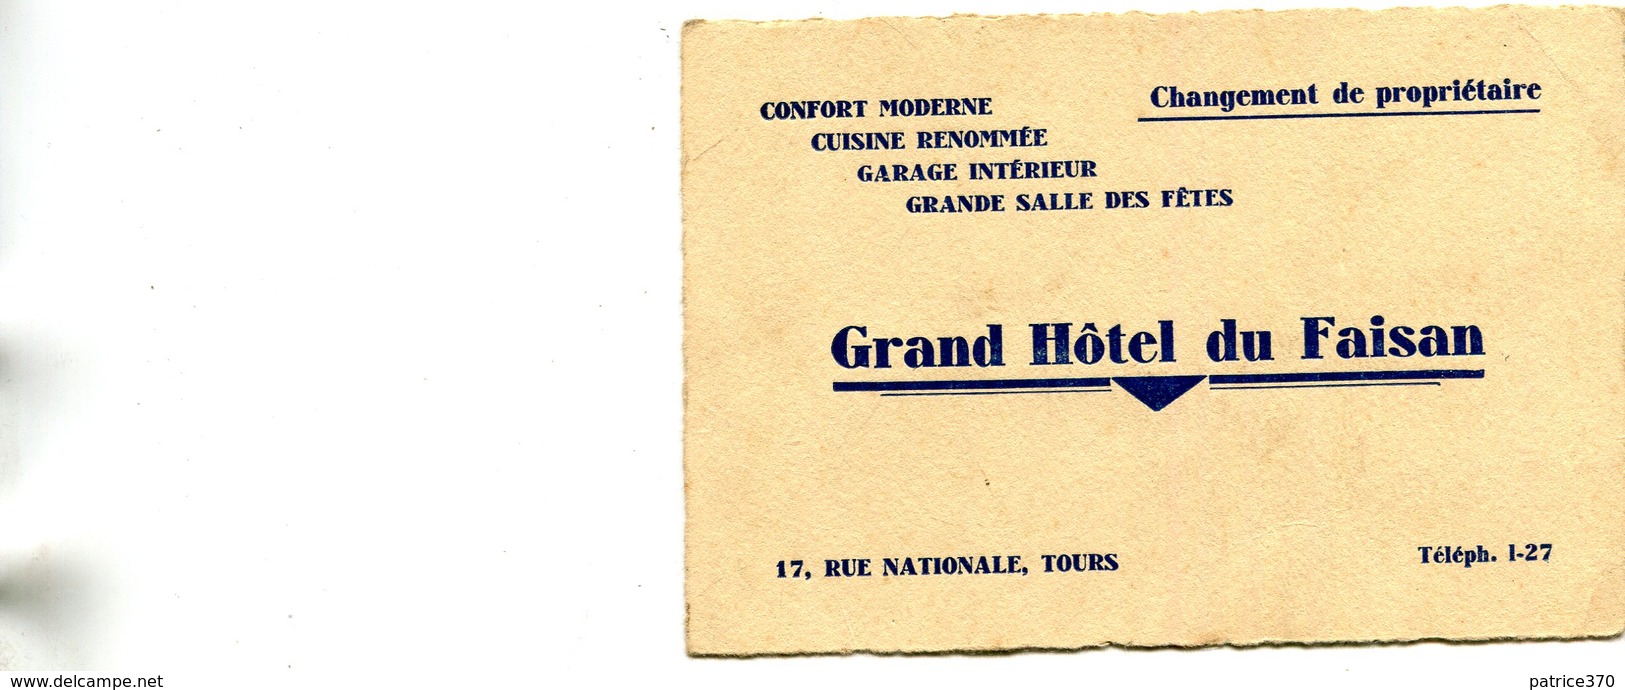 Carte Publicité Grand Hôtel Du Faisan 17 Rue Nationale Tours Changement De Propriétaire - Publicités